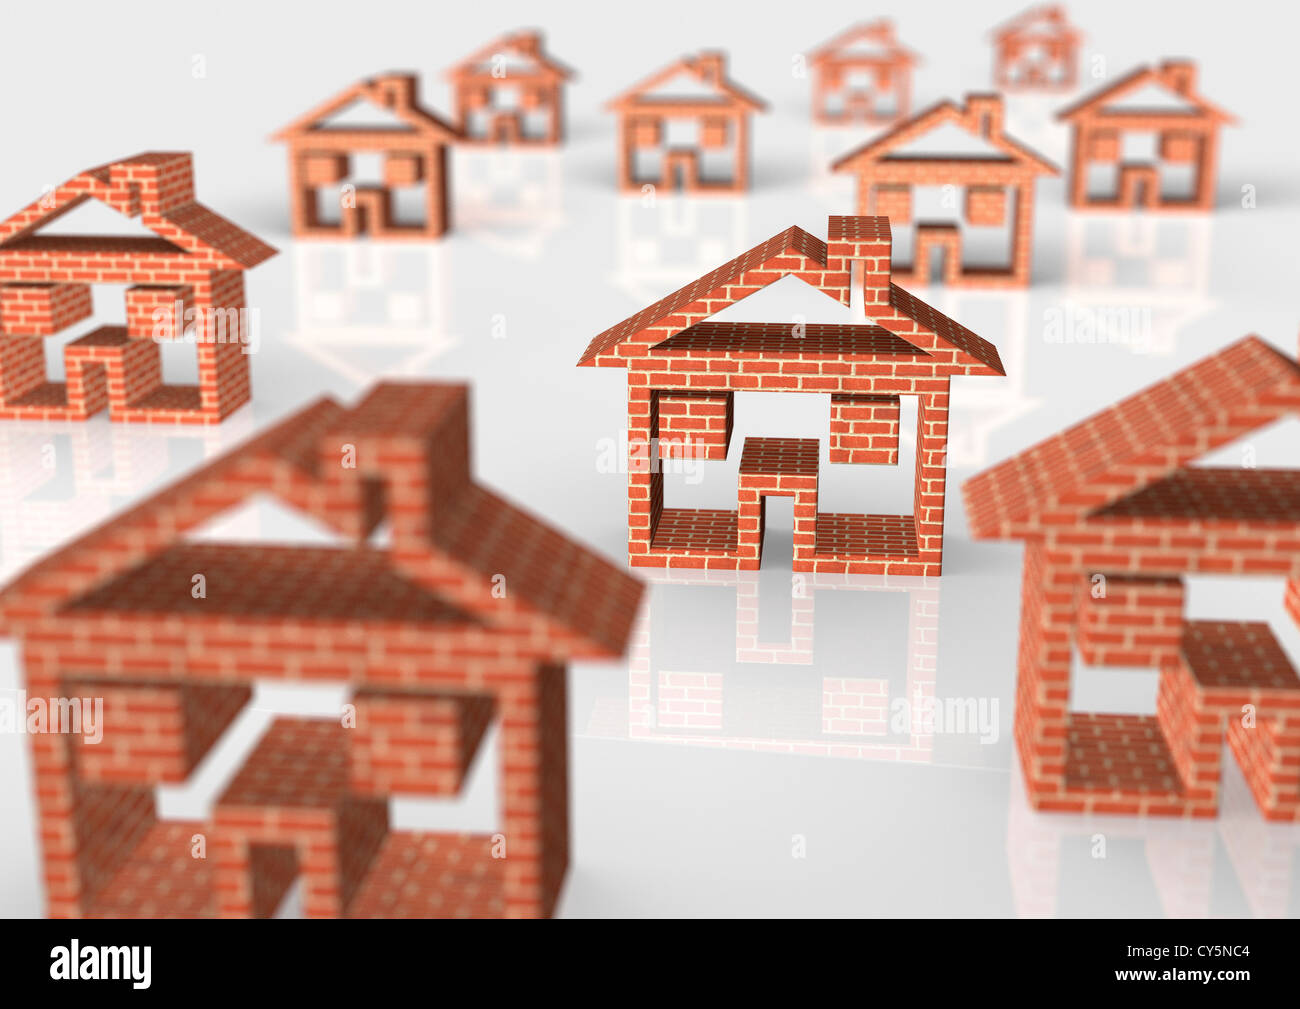 Mehreren Haussymbole auf weiß - 3D - Konzept Bild rendern Stockfoto